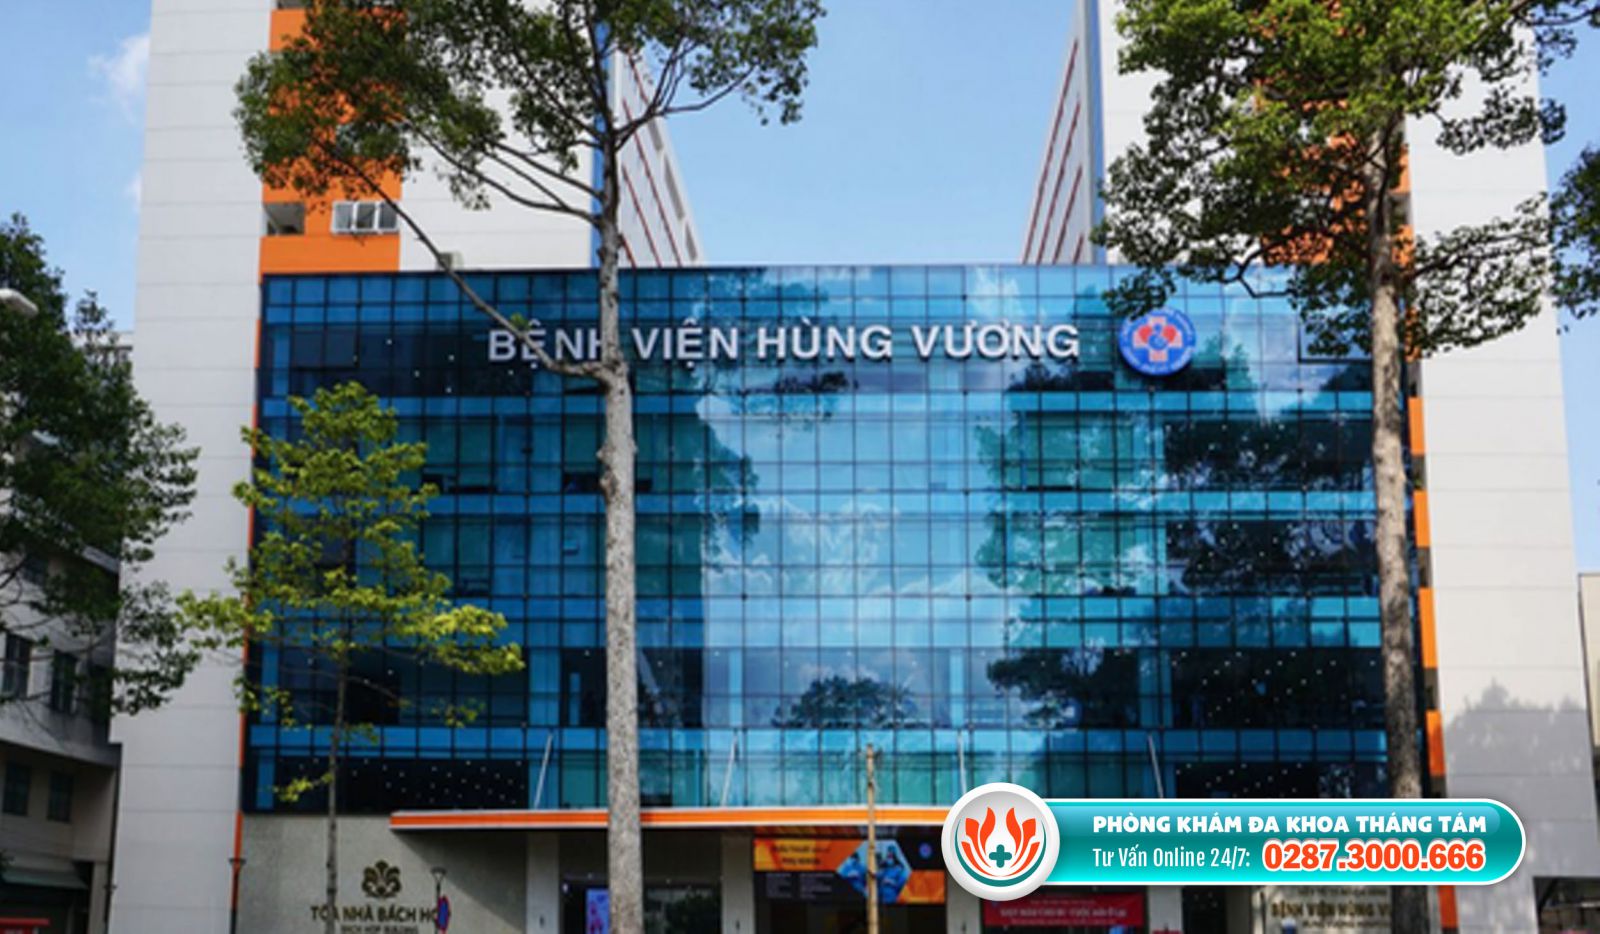 Bệnh viện Hùng Vương là địa chỉ đình chỉ thai uy tín TPHCM